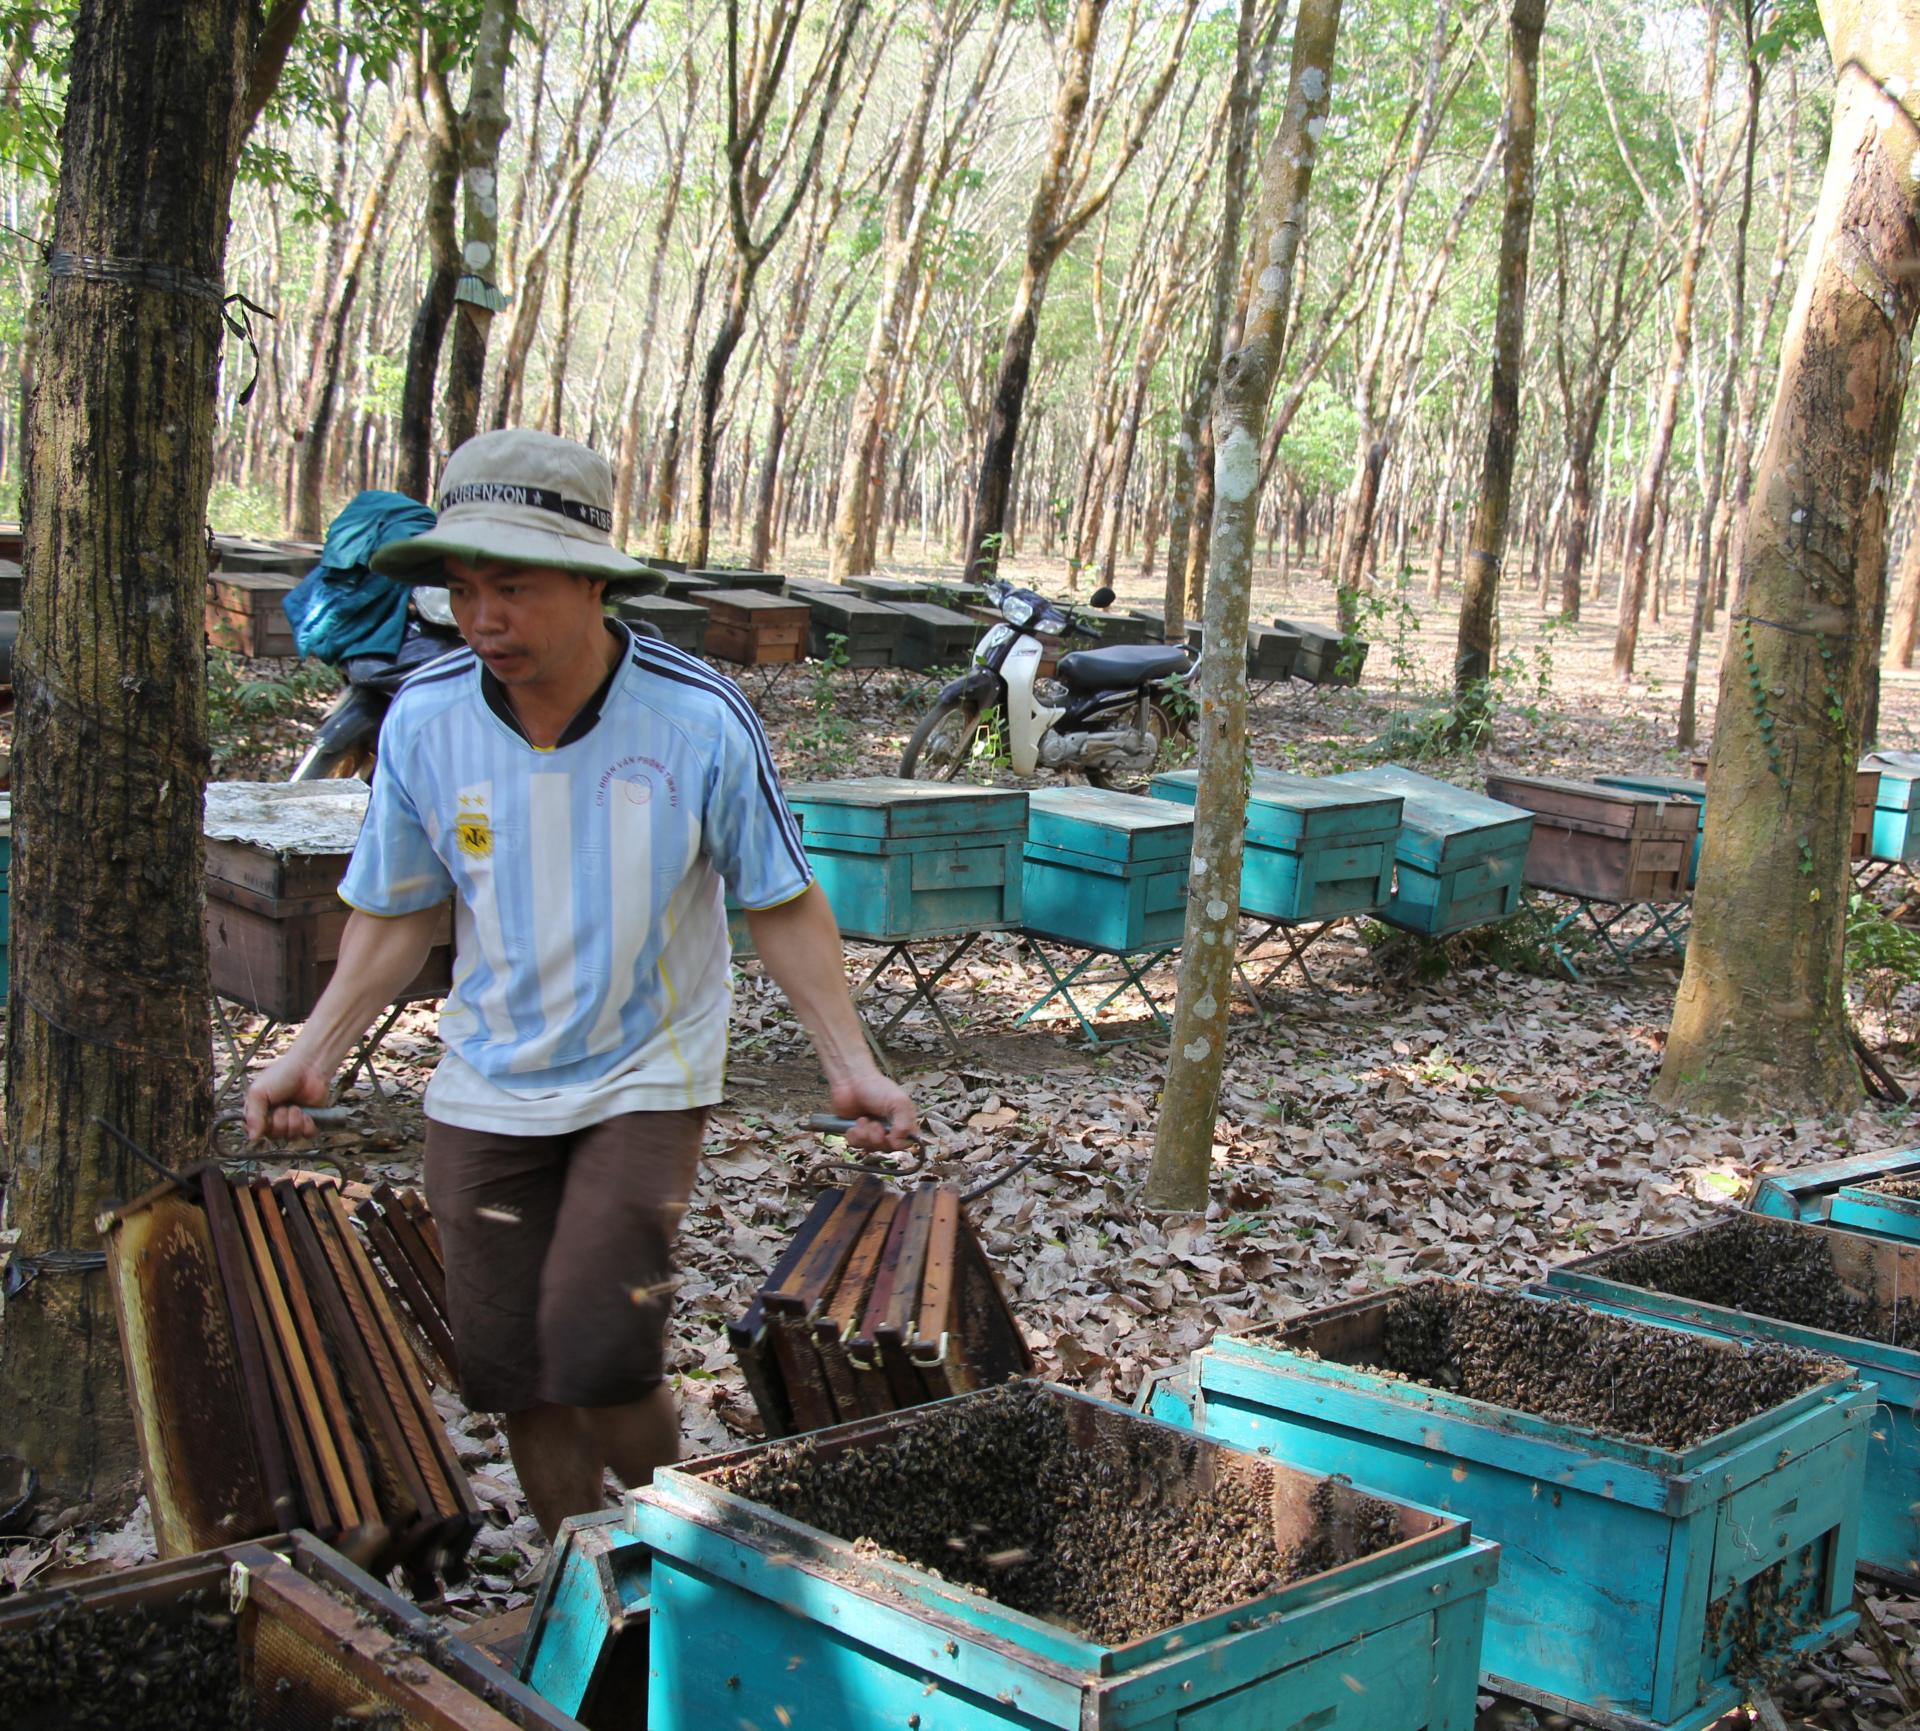 Rõ khổ, nông dân nuôi ong mật ở Đắk Lắk &quot;xấc bấc  xang bang&quot;, bán 4kg mật mới mua được 1 ký thịt heo - Ảnh 4.